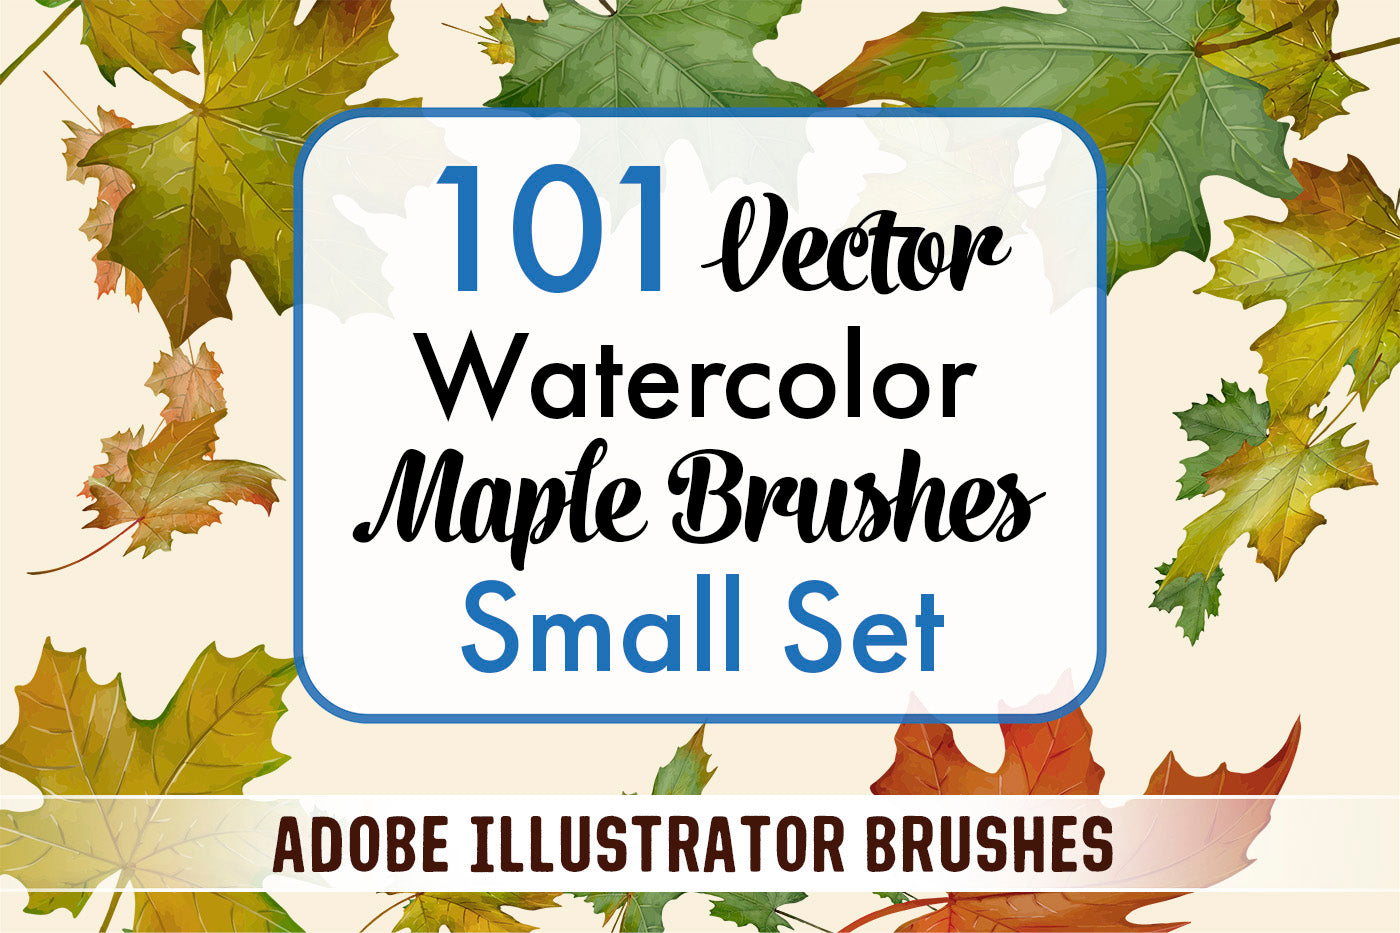 Maple Brushes Small Set - Illustrator Brushes